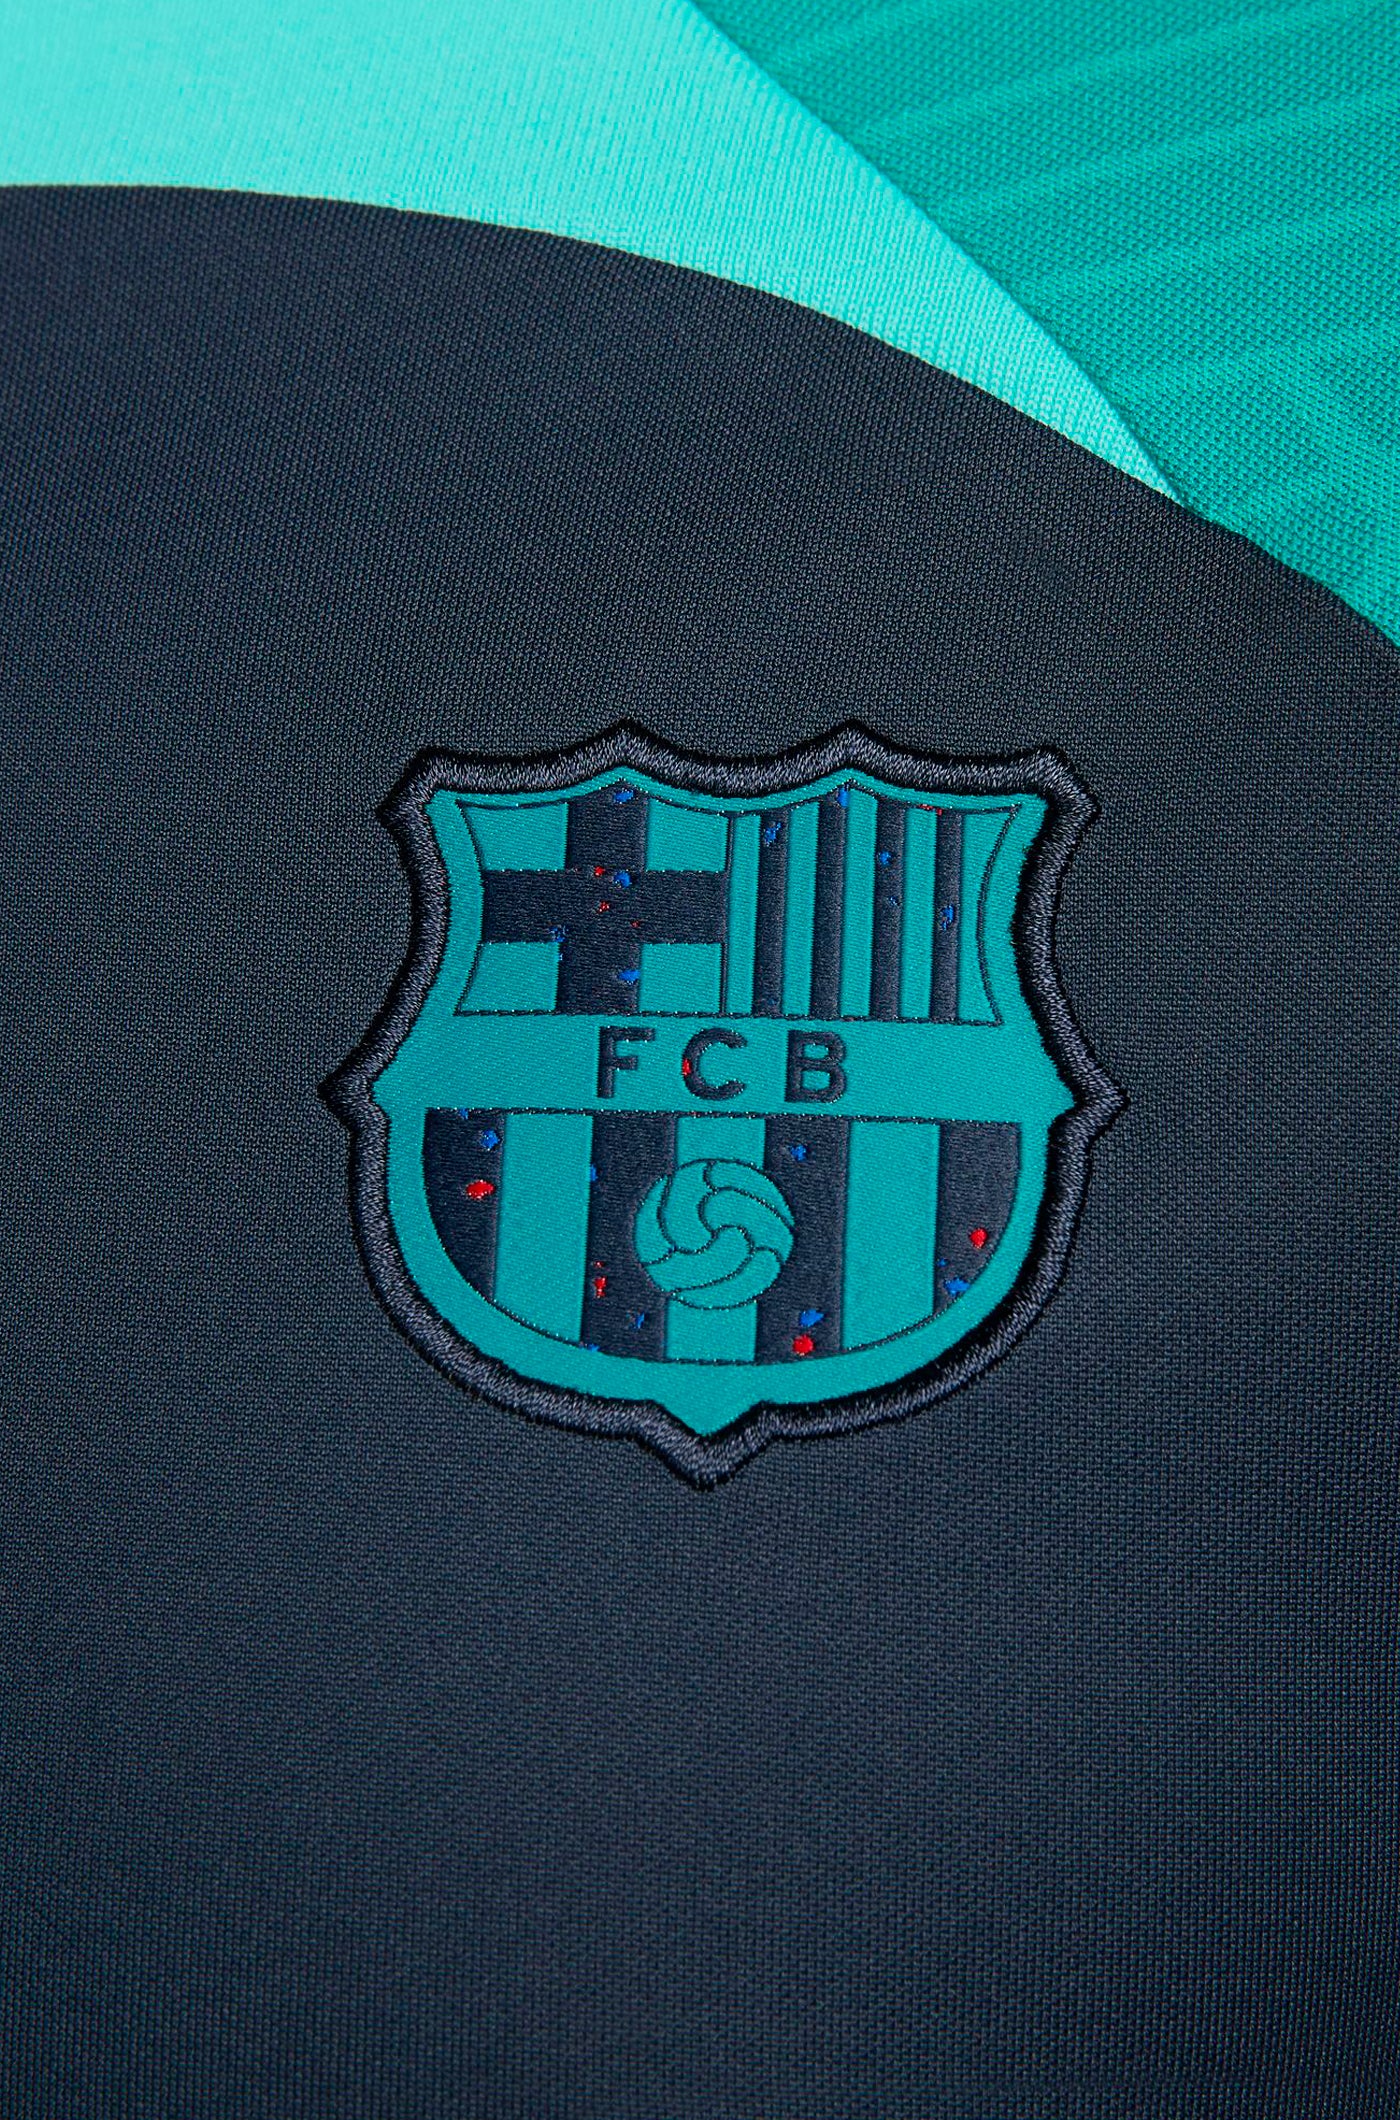 Samarreta entrenament FC Barcelona 23/24